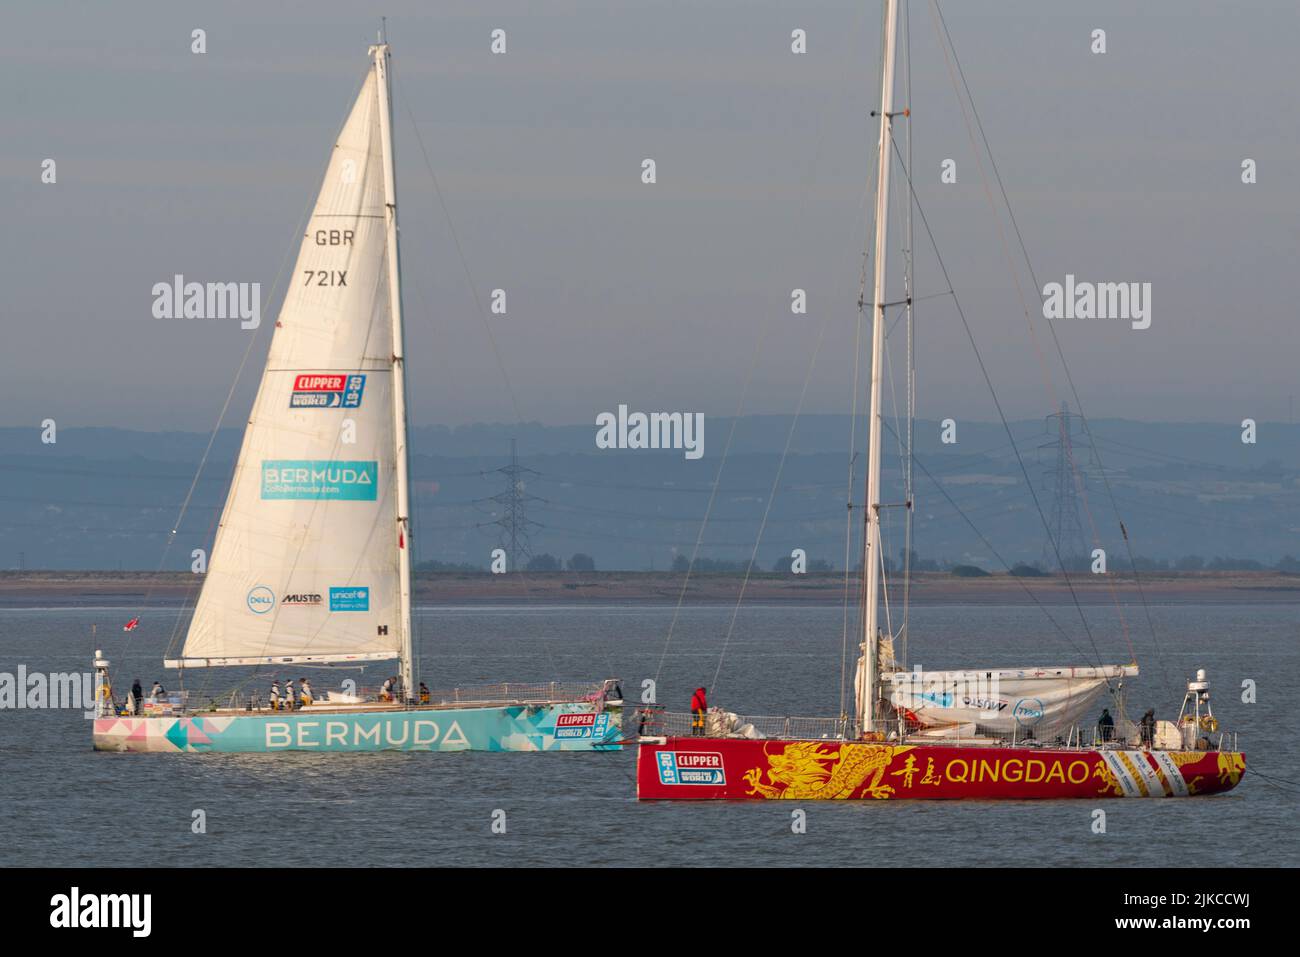 Das Bermuda- und Qingdao-Team bohrt nach dem Clipper Round the World-Rennen vor dem Southend Pier in der Themse-Mündung Stockfoto